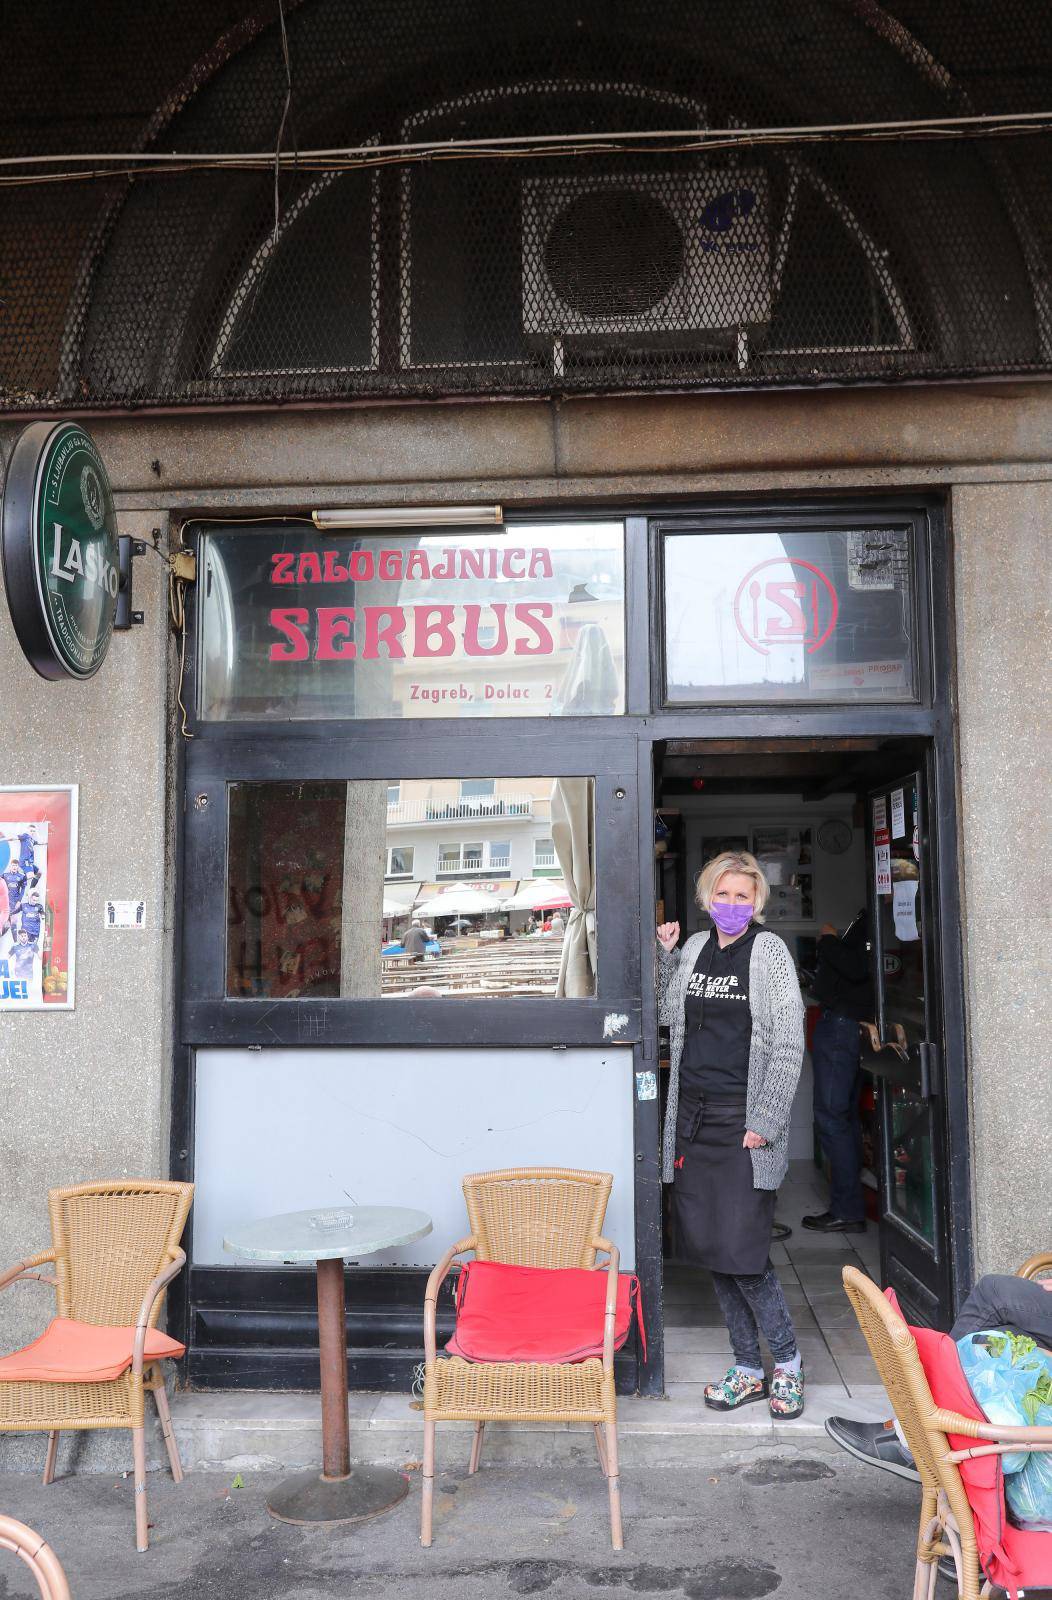 Nakon 30 godina, Grad Zagreb ovršuje kafić na Dolcu: 'Sve je namješteno, tužili smo Grad'